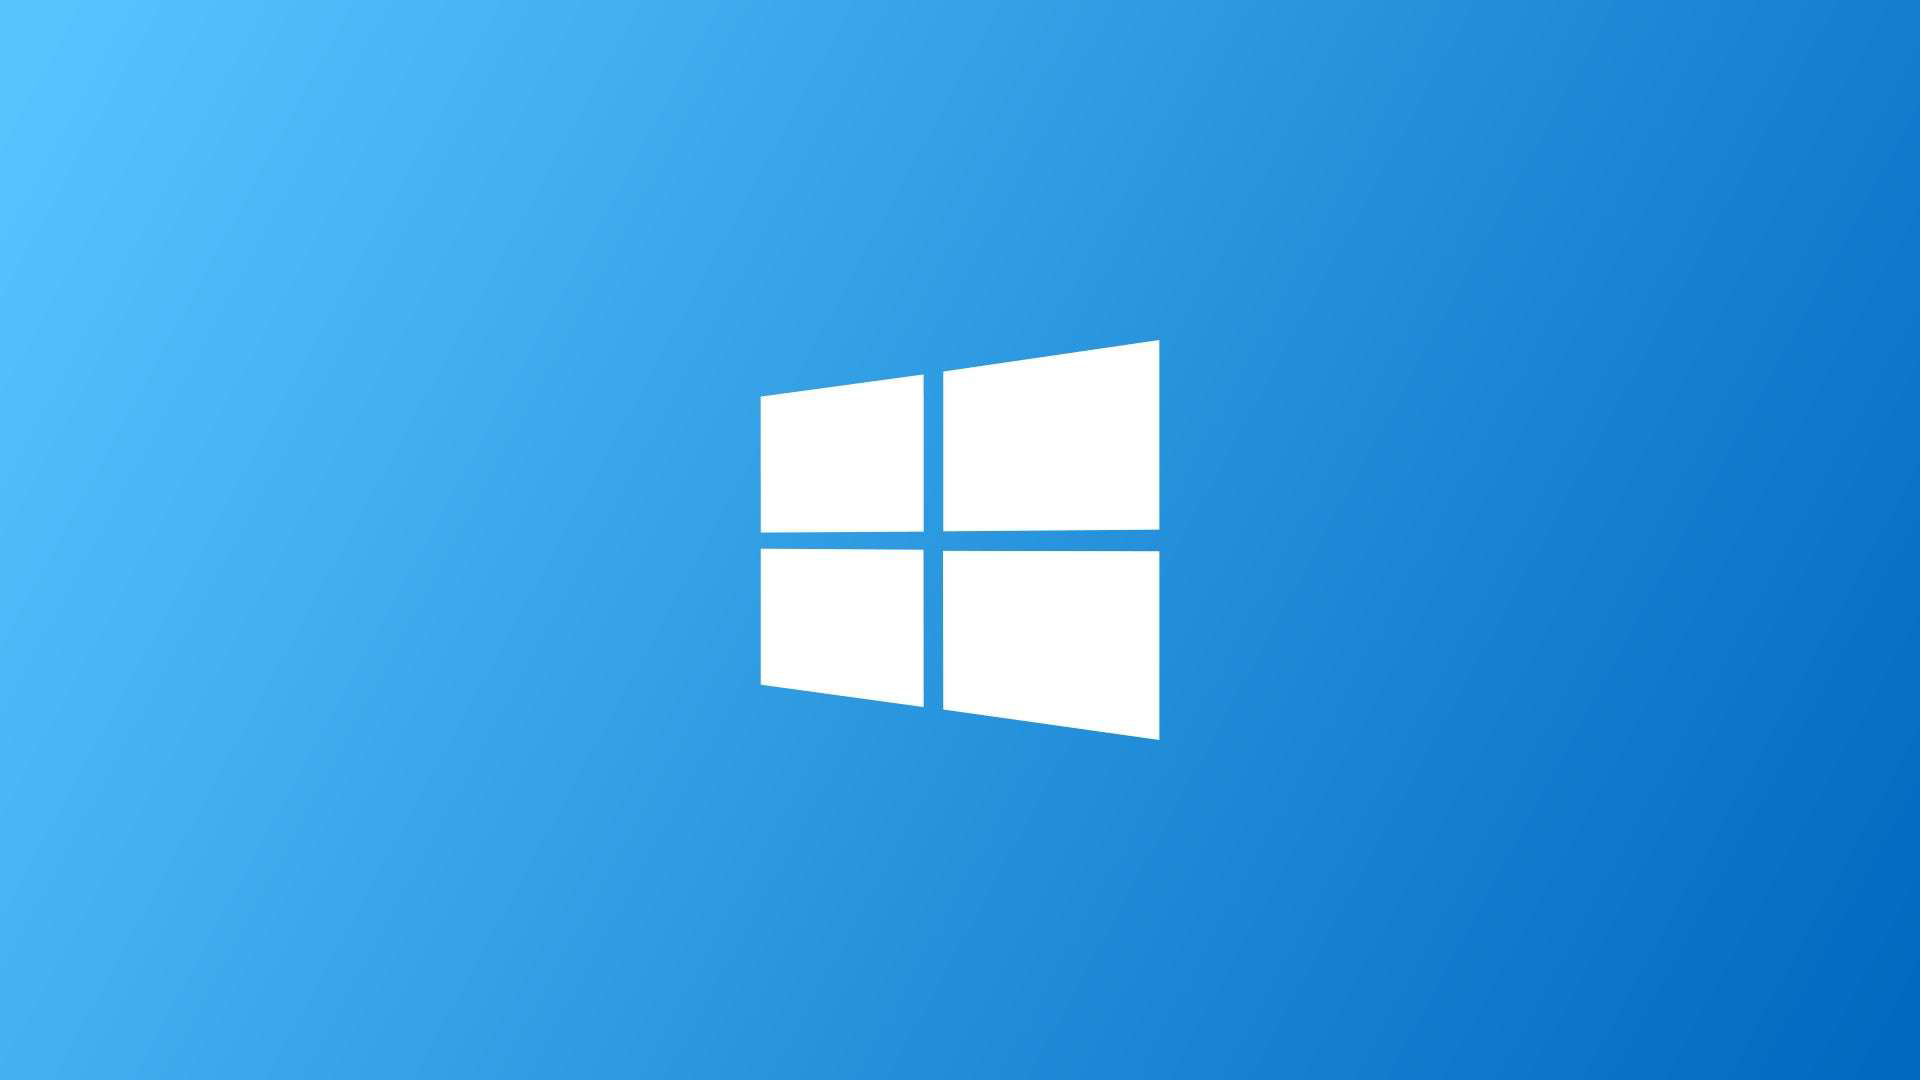 مايكروسوفت تدفع قريباً التصميم الجديد لقائمة WINDOWS 10 الرئيسية لجميع المستخدمين